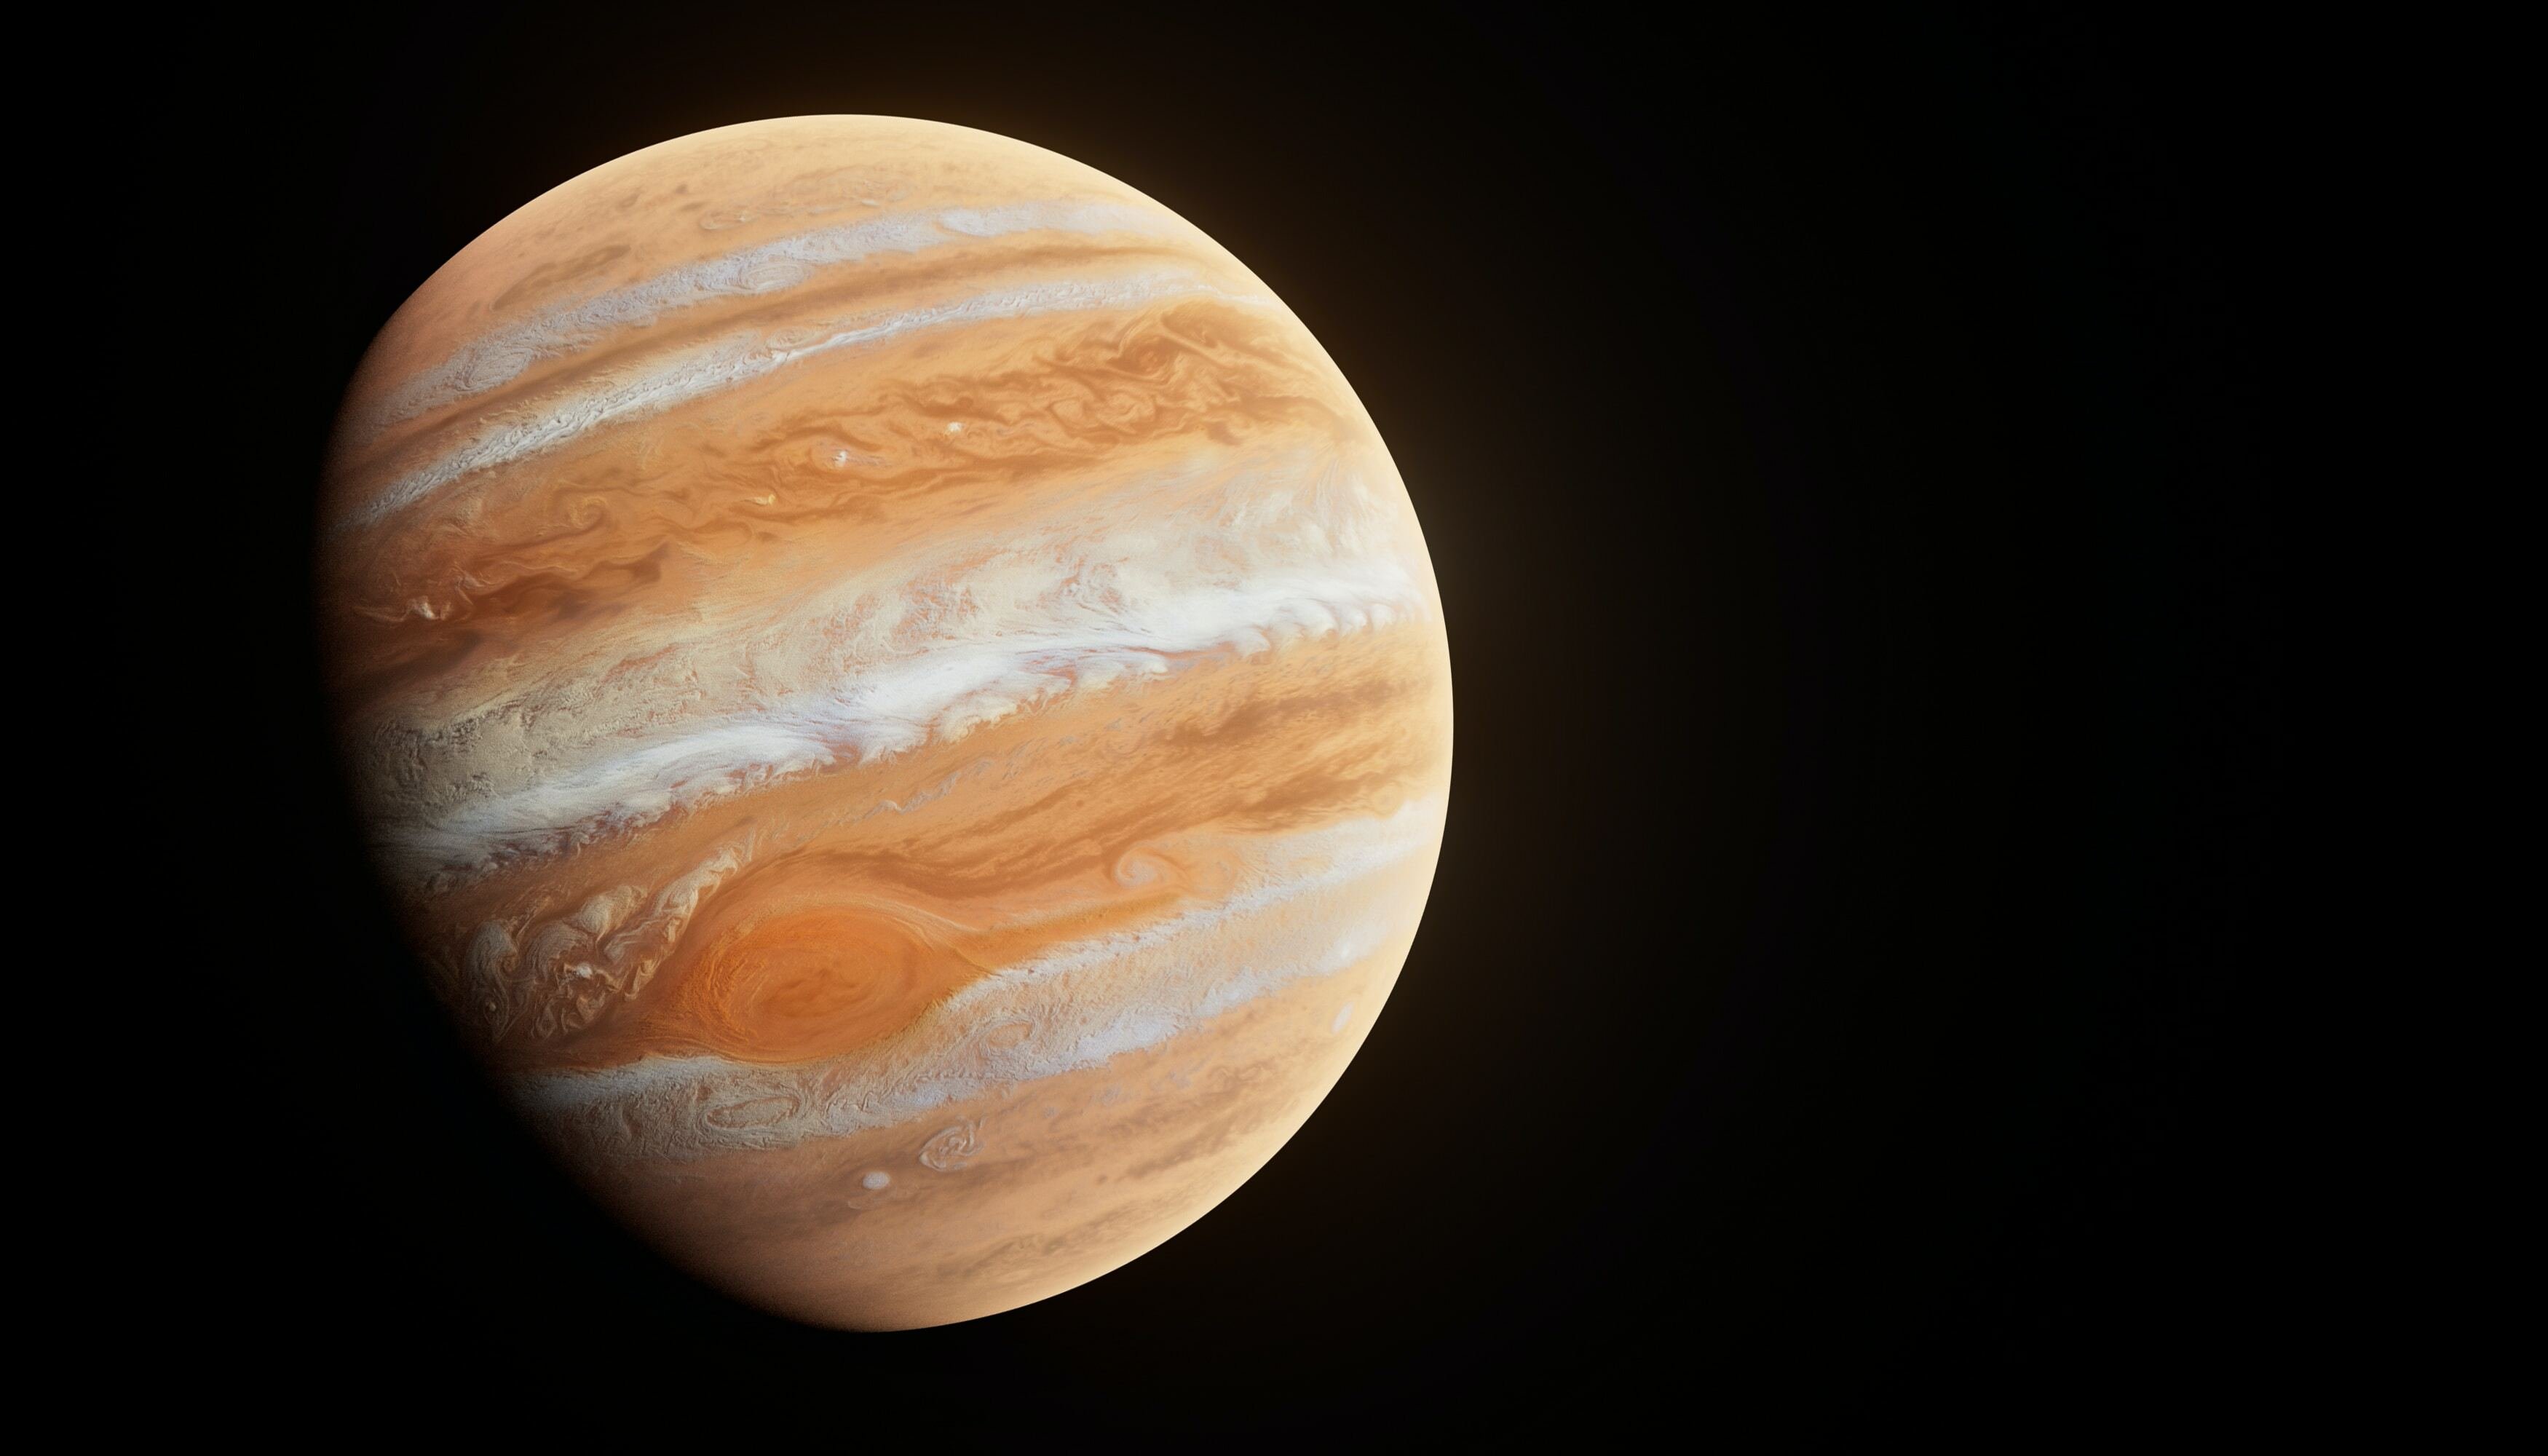 Planeta Jupiter com fundo escuro do espaço, nas cores marrom e branco.